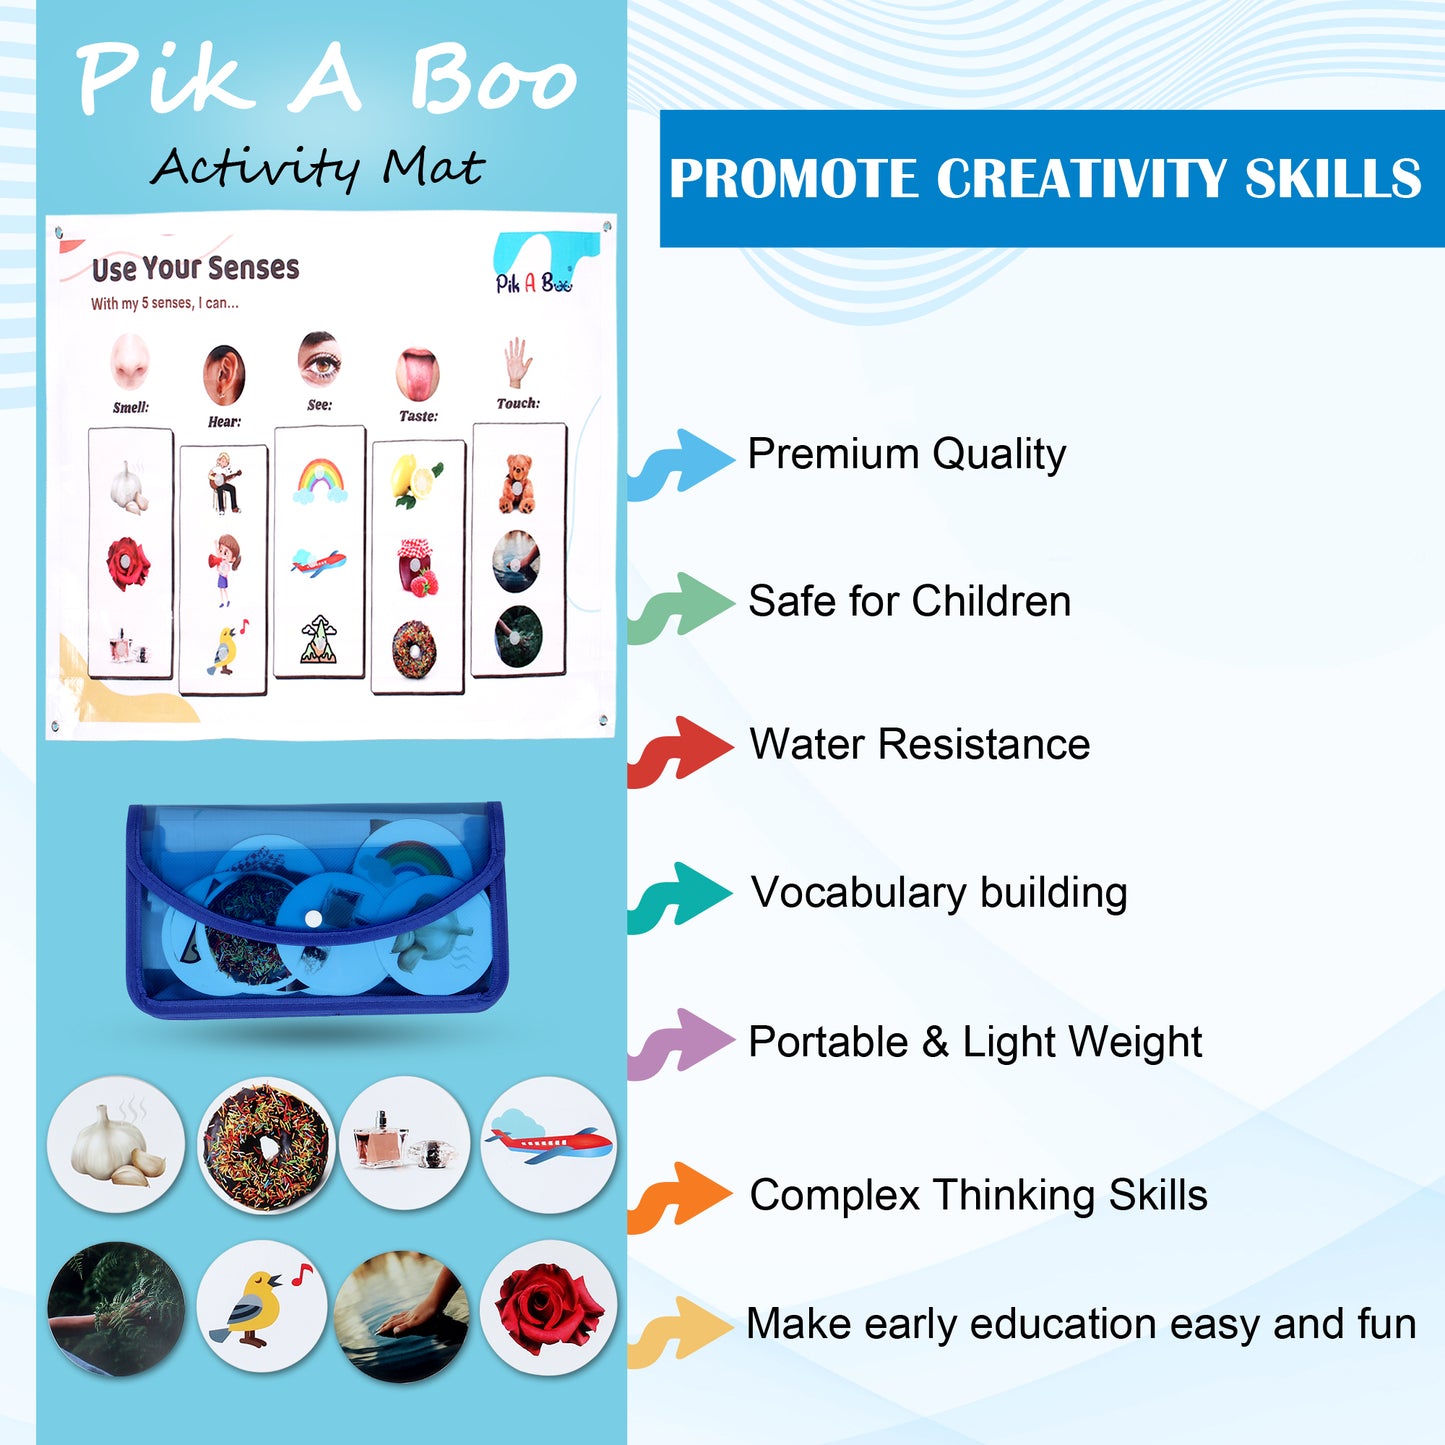 PiK A BOO Five Senses Activity Mat For Kids, Children Approx 91*60 Cm